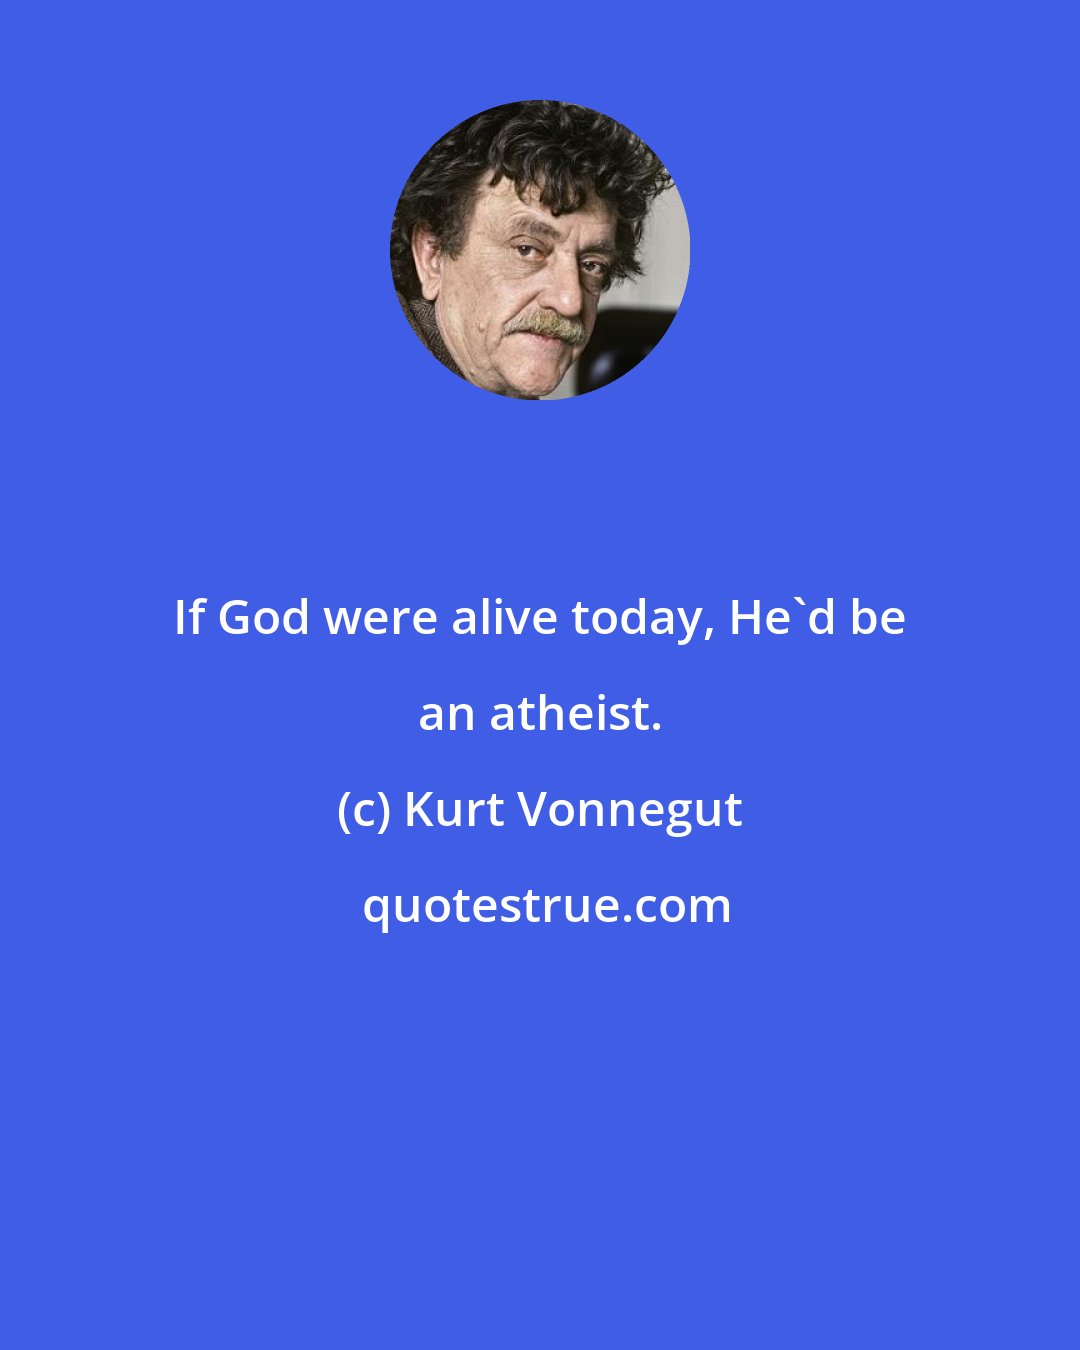 Kurt Vonnegut: If God were alive today, He'd be an atheist.